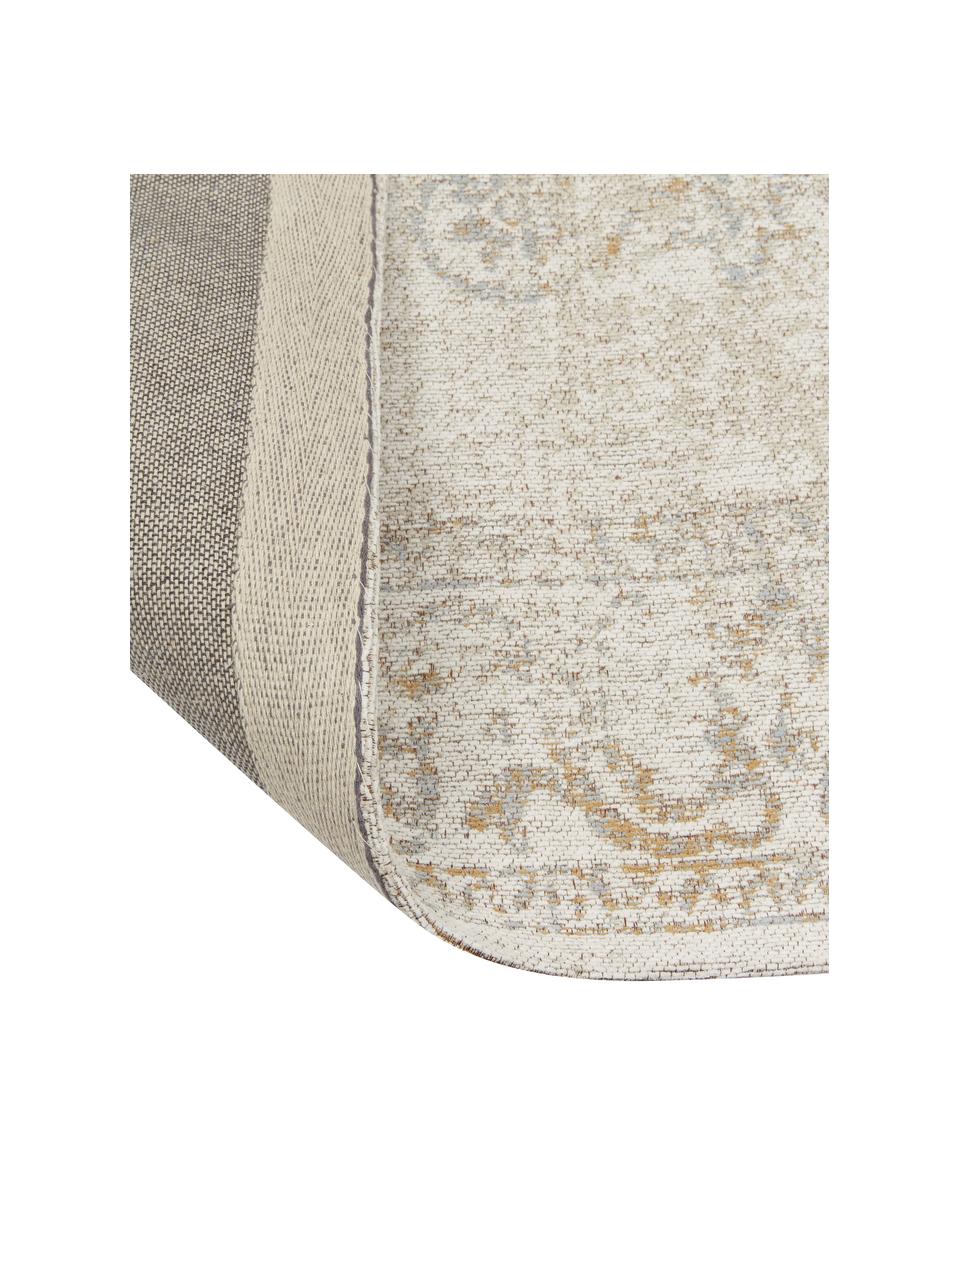 Ručně tkaný žinylkový koberec Nalia, Odstíny béžové, odstíny šedé, Š 120 cm, D 180 cm (velikost S)